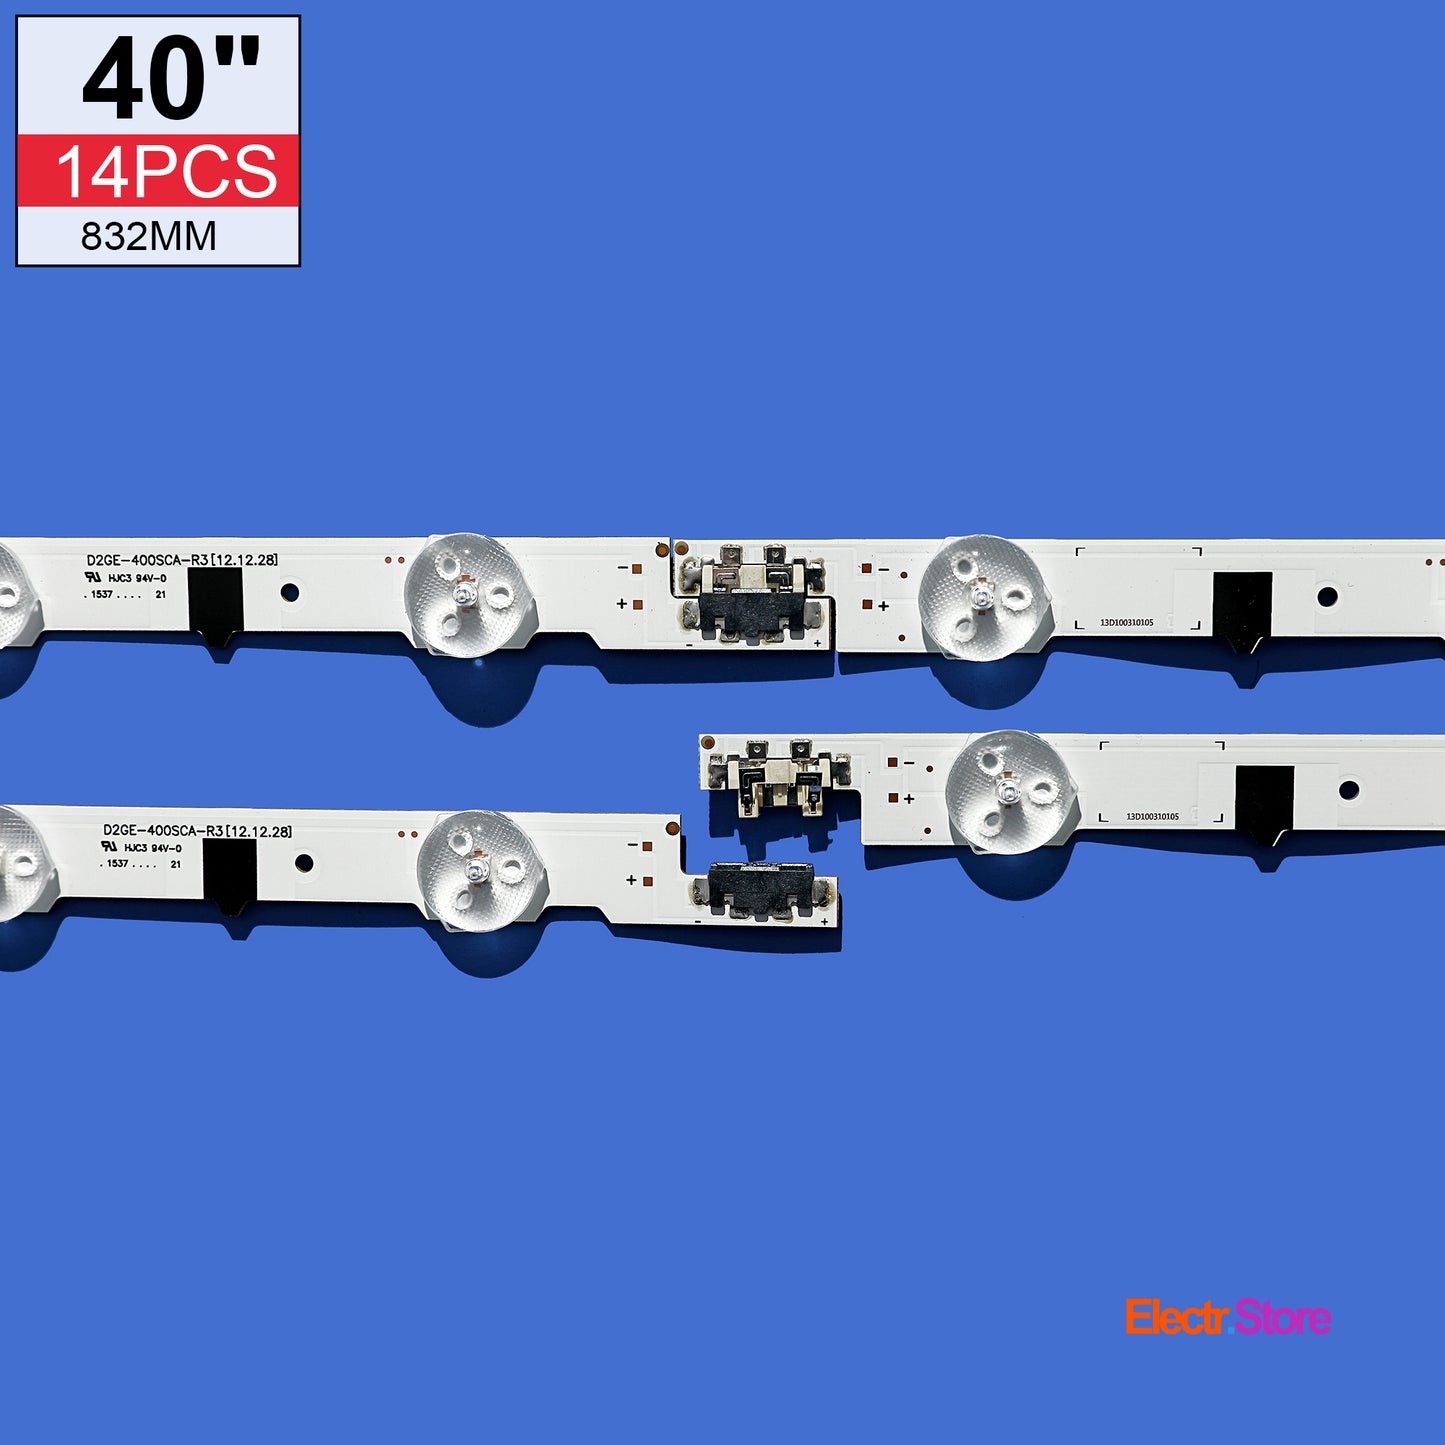 LED Backlight Strip Kits, 2013SVS40F, D2GE-400SCA-R3/D2GE-400SCB-R3, BN96-25304A/BN96-25305A (14 pc/kit), for TV 40" 40" D2GE-400SCA-R3 D2GE-400SCB-R3 LED Backlights Samsung Electr.Store